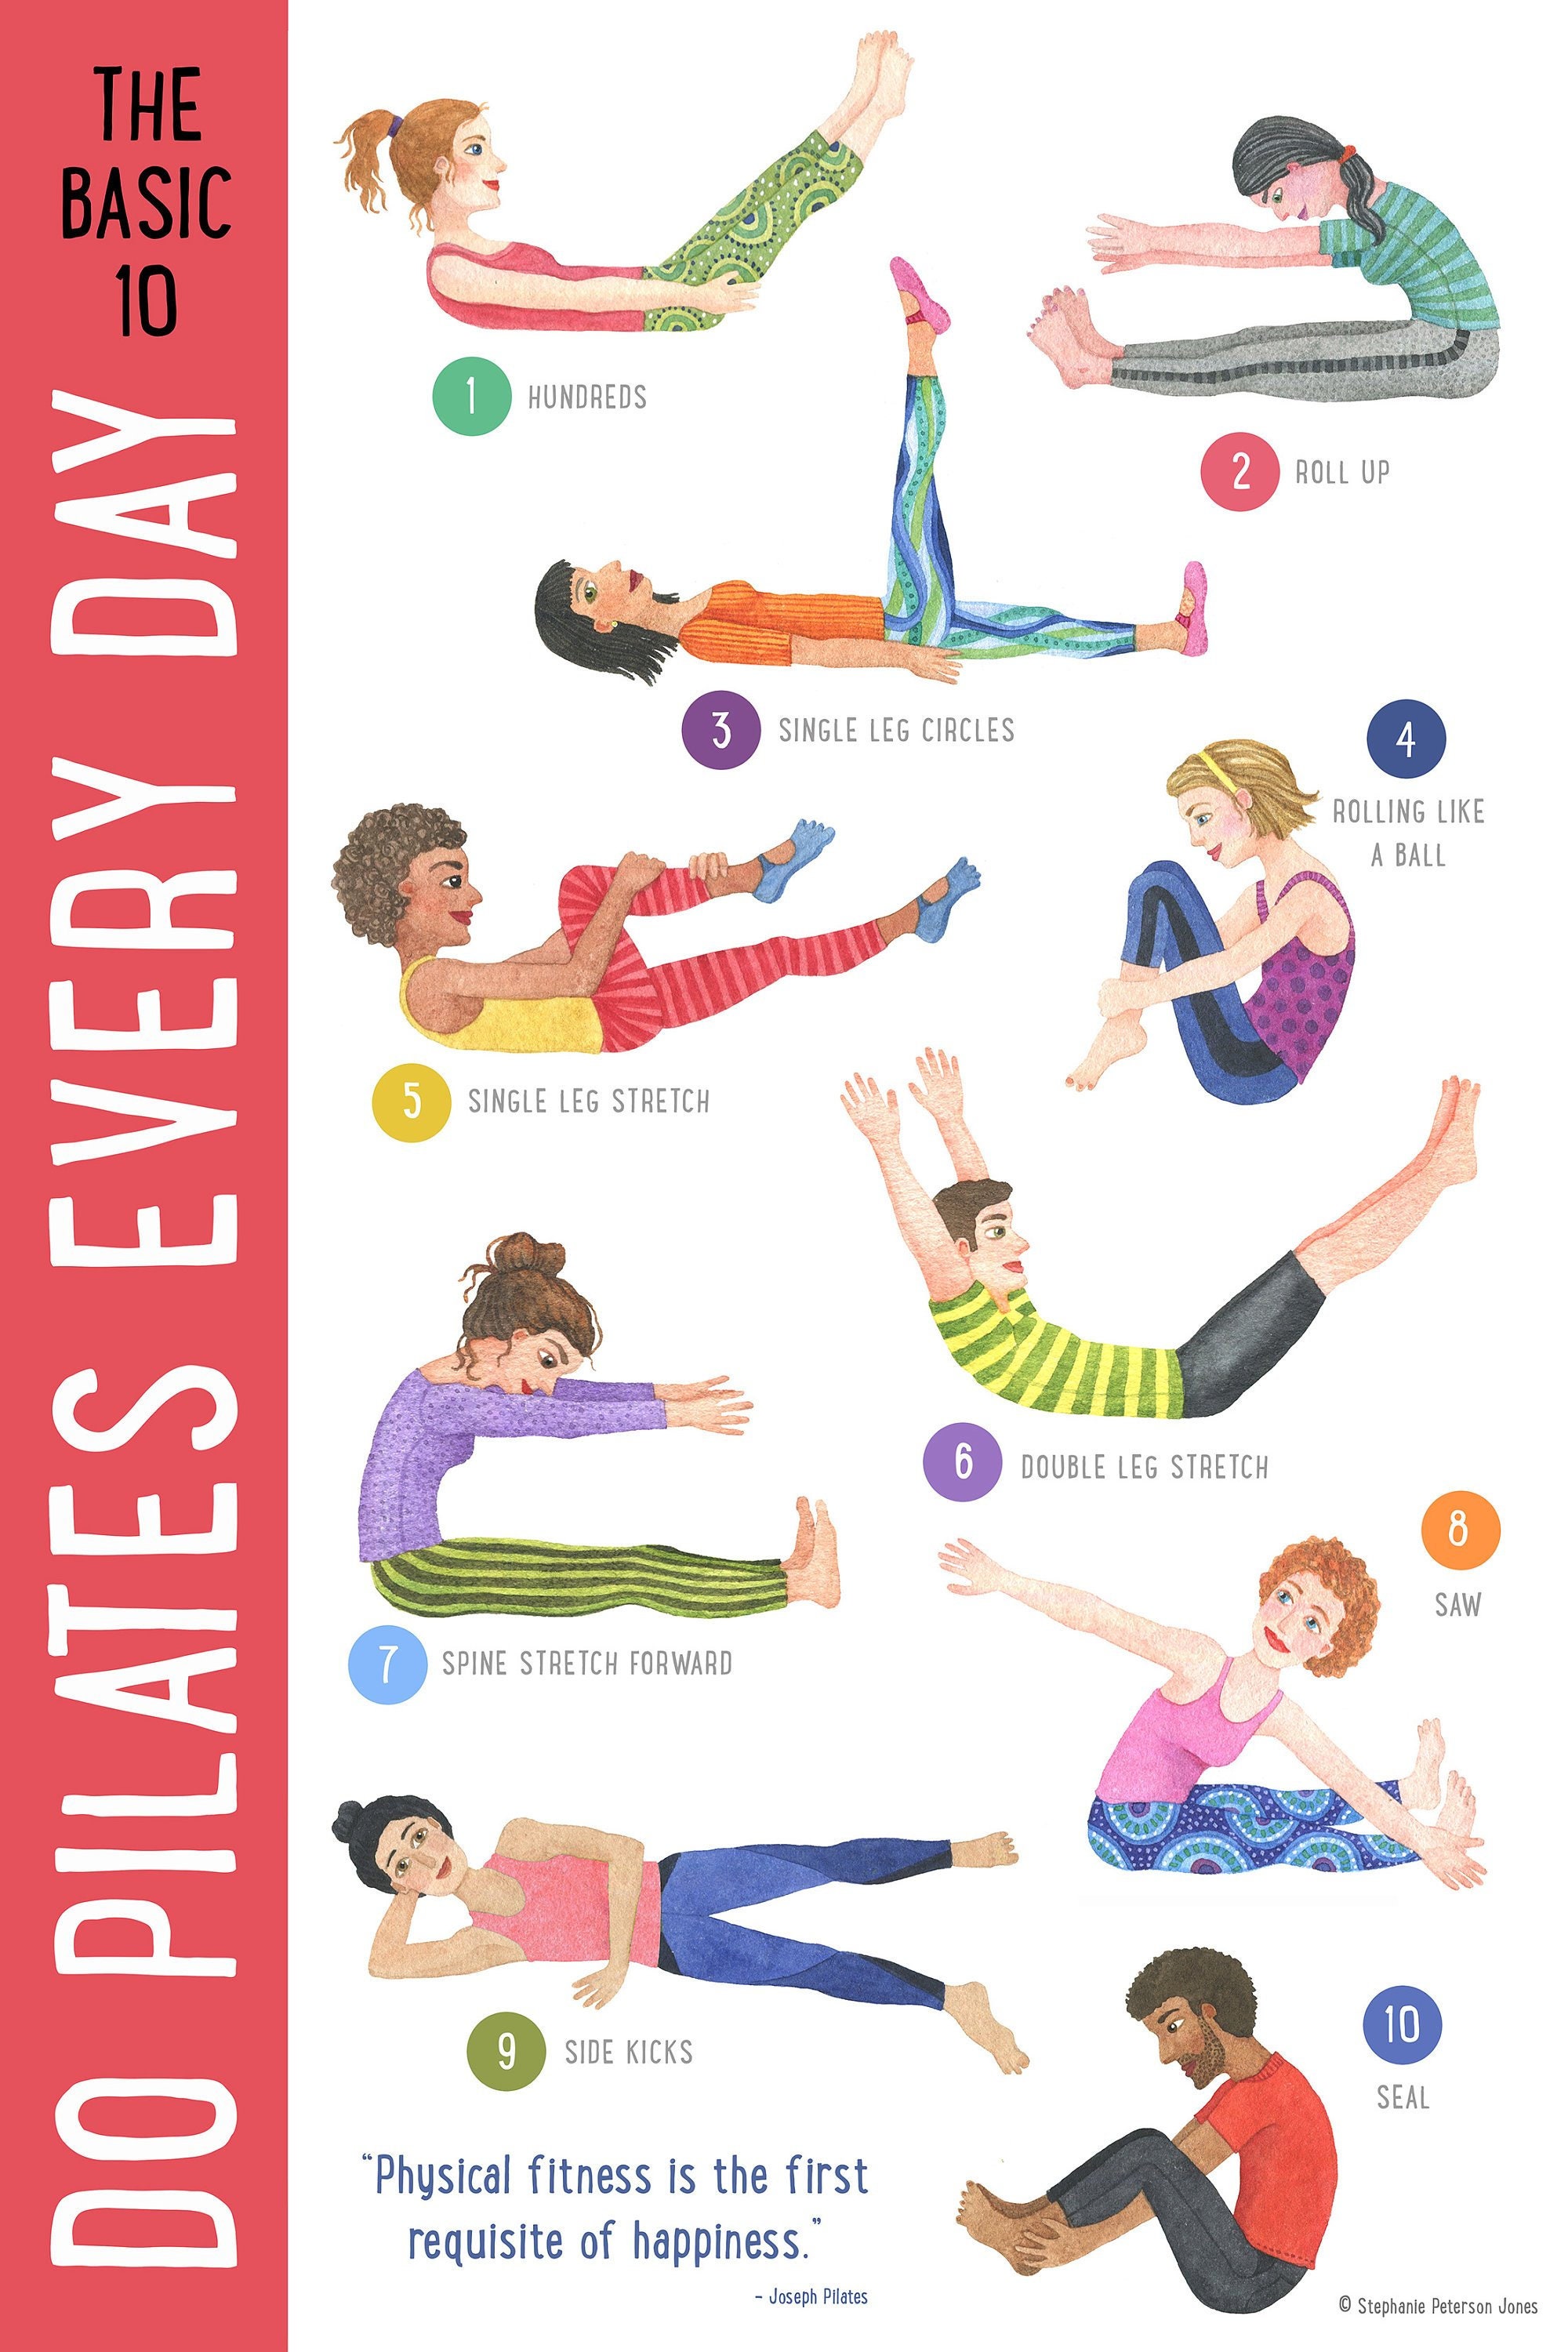 Pilates Basics: Try These Basic Pilates Moves